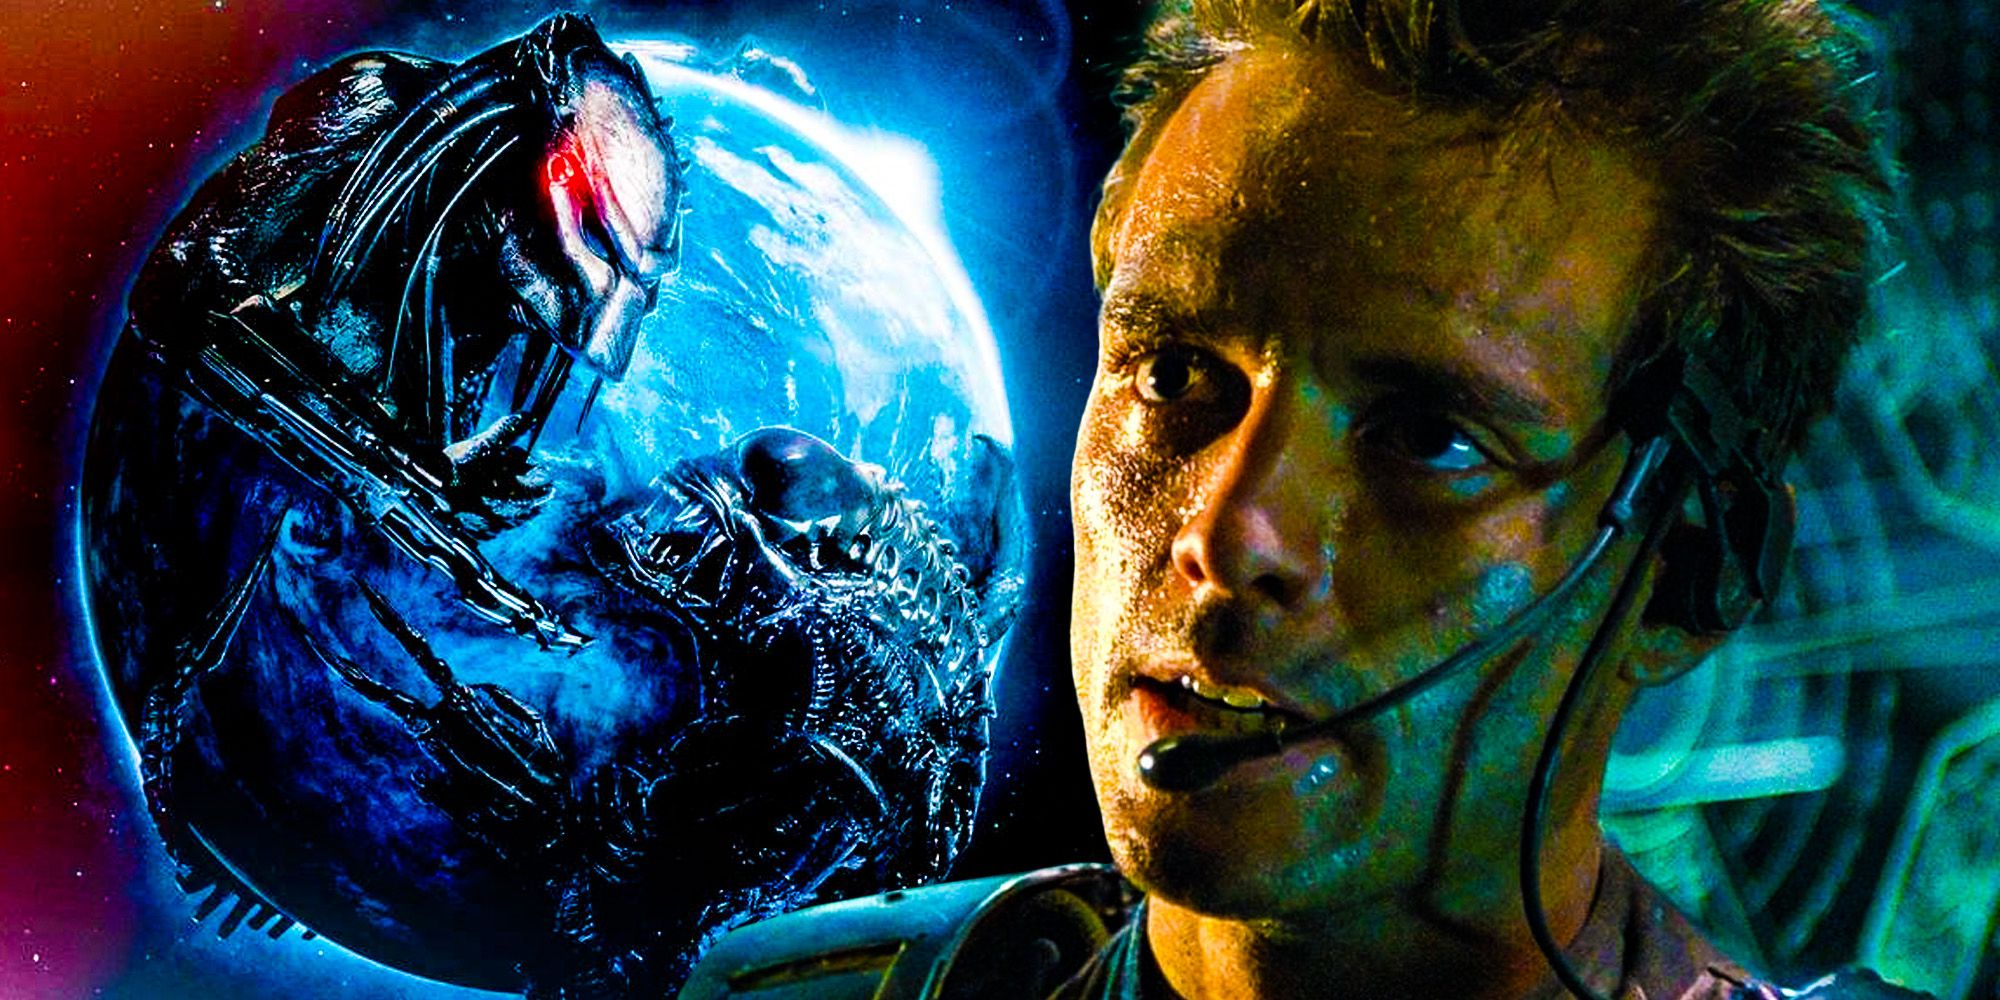 Alien vs Predator Requiem Michael Biehn